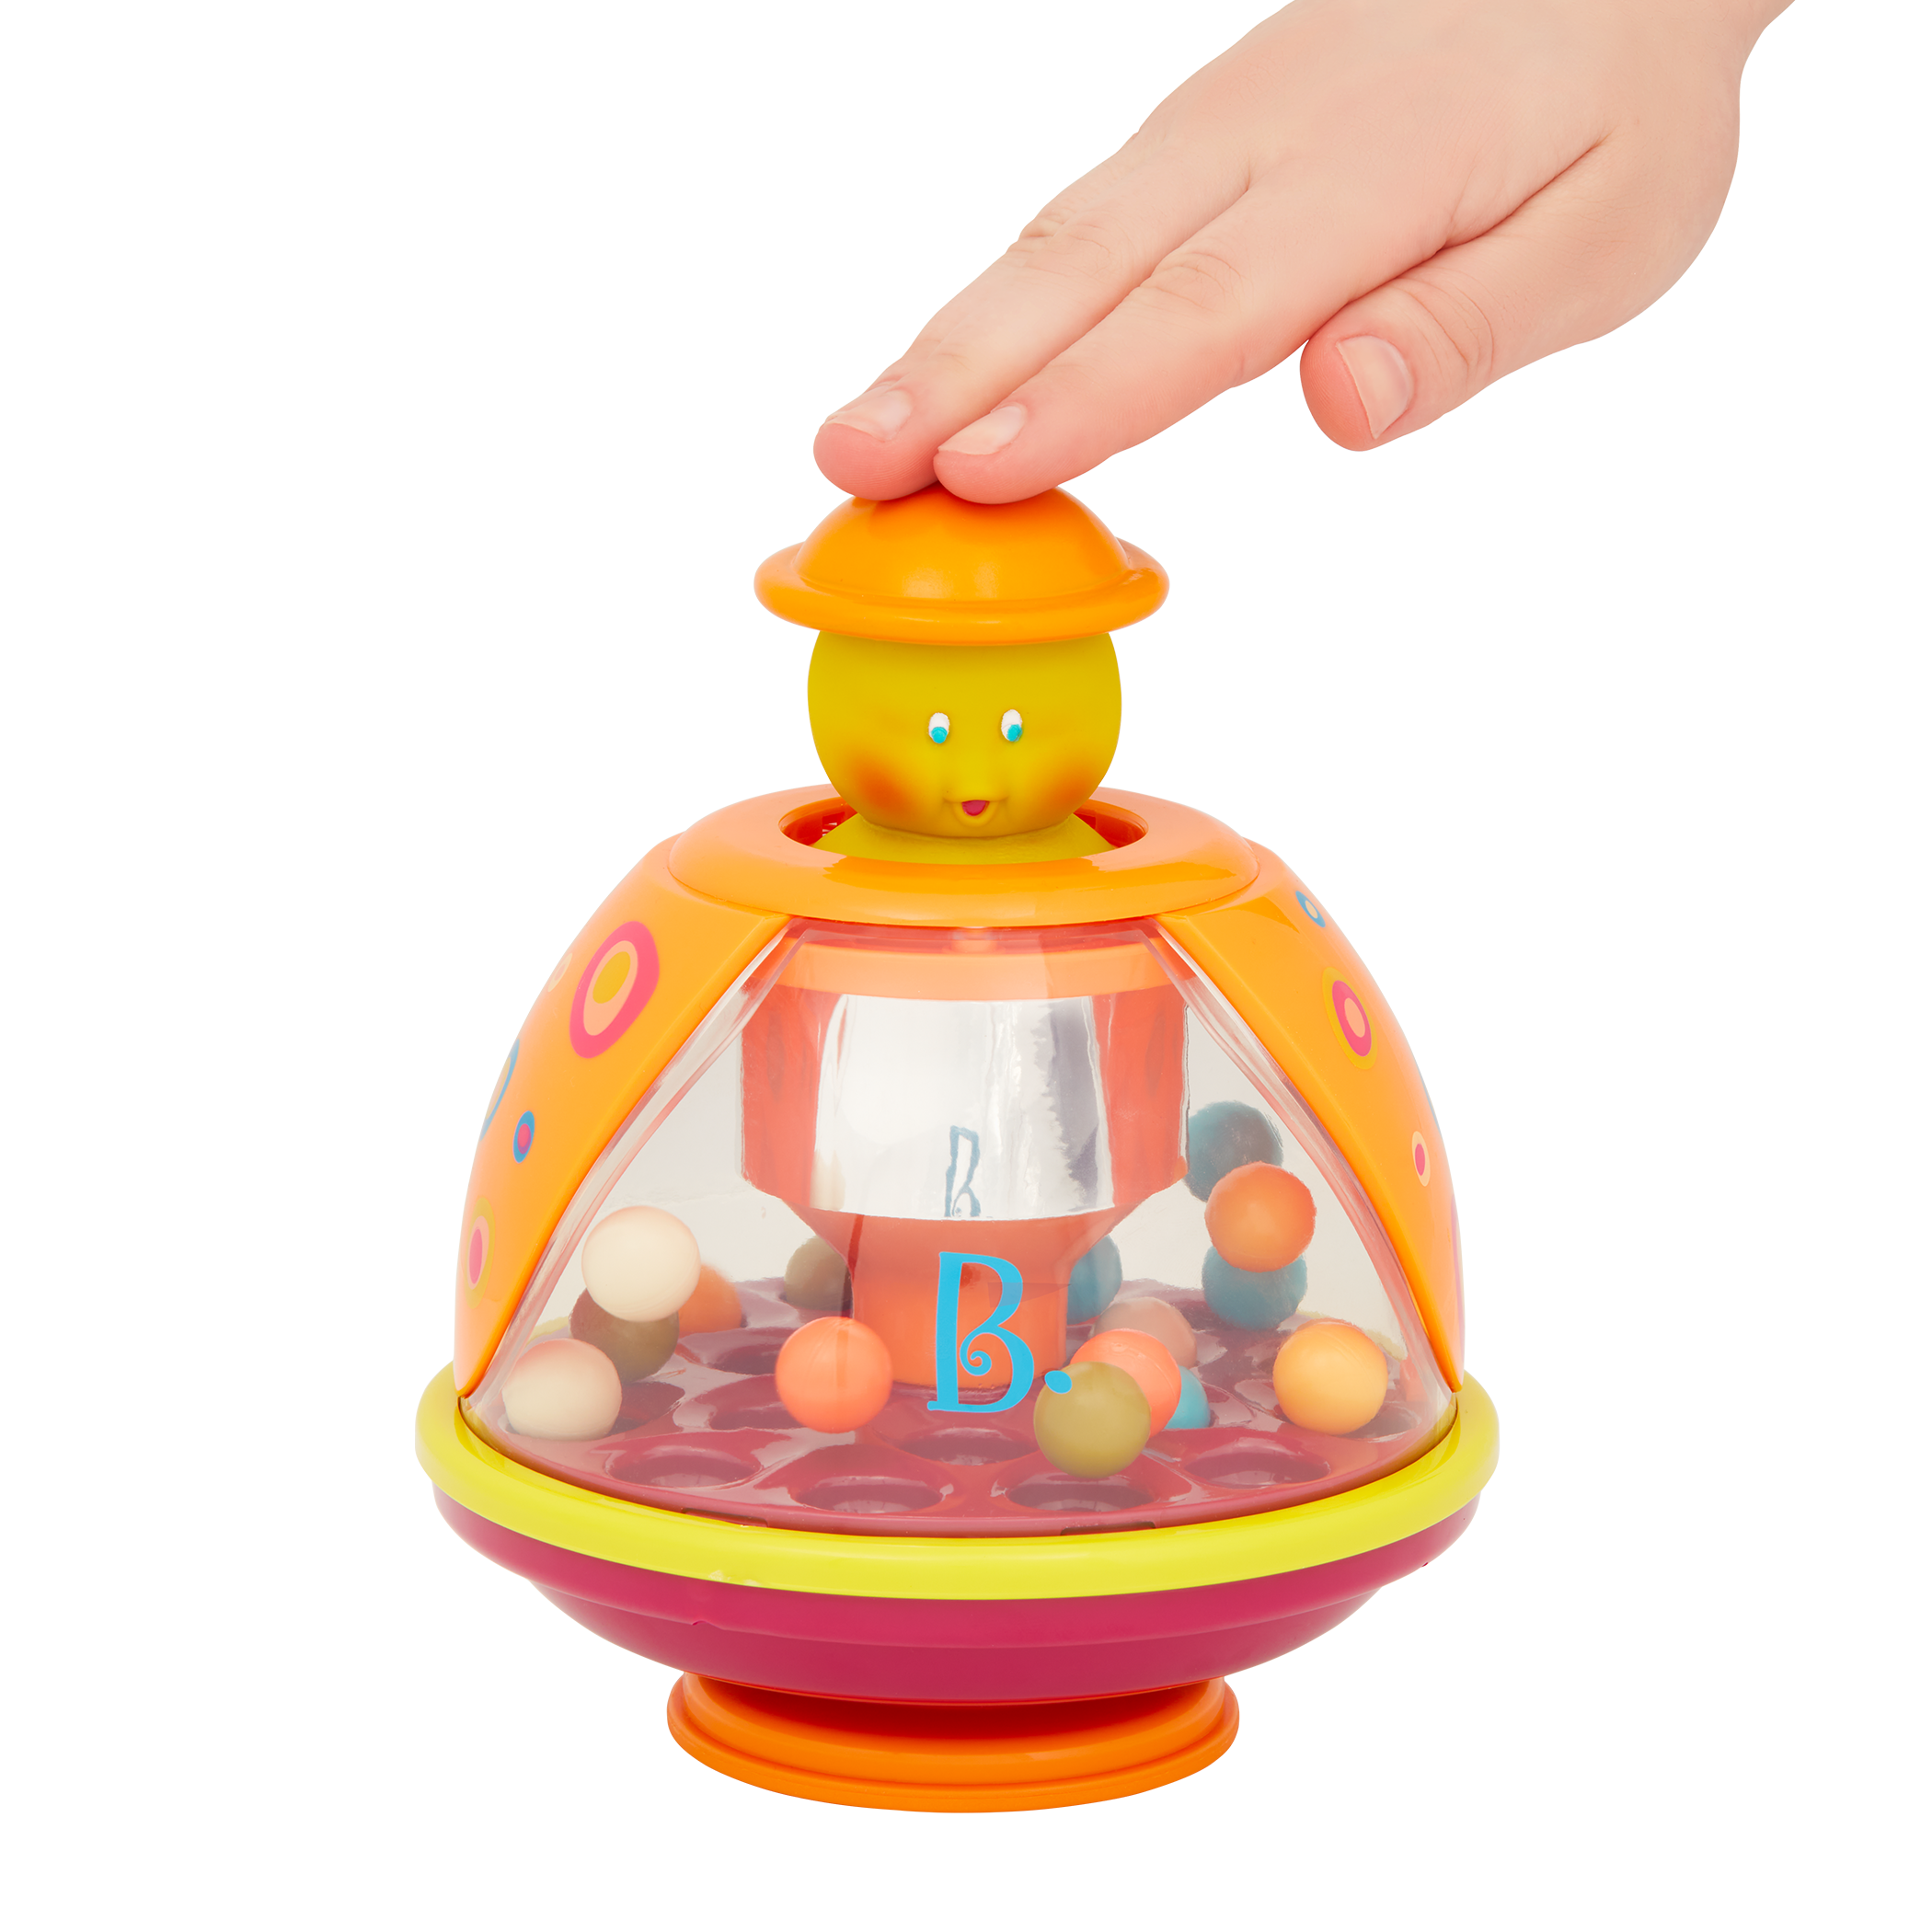 Ladybug tumble toy with colourful balls